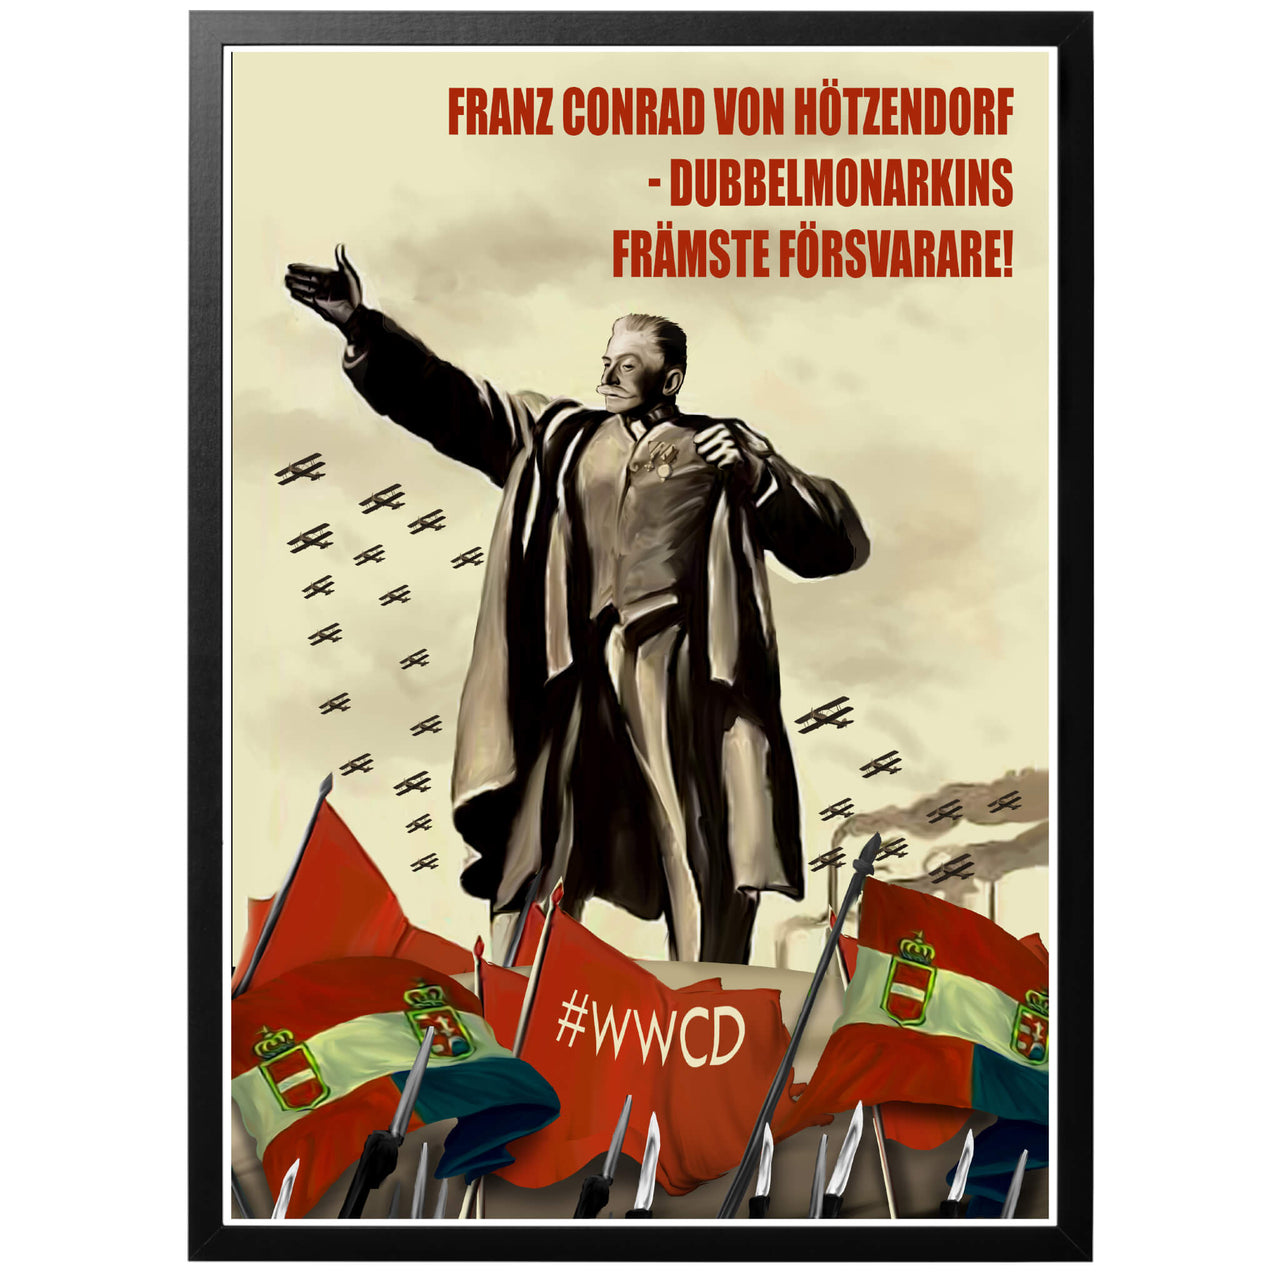 Franz Conrad von Hötzendorf Poster